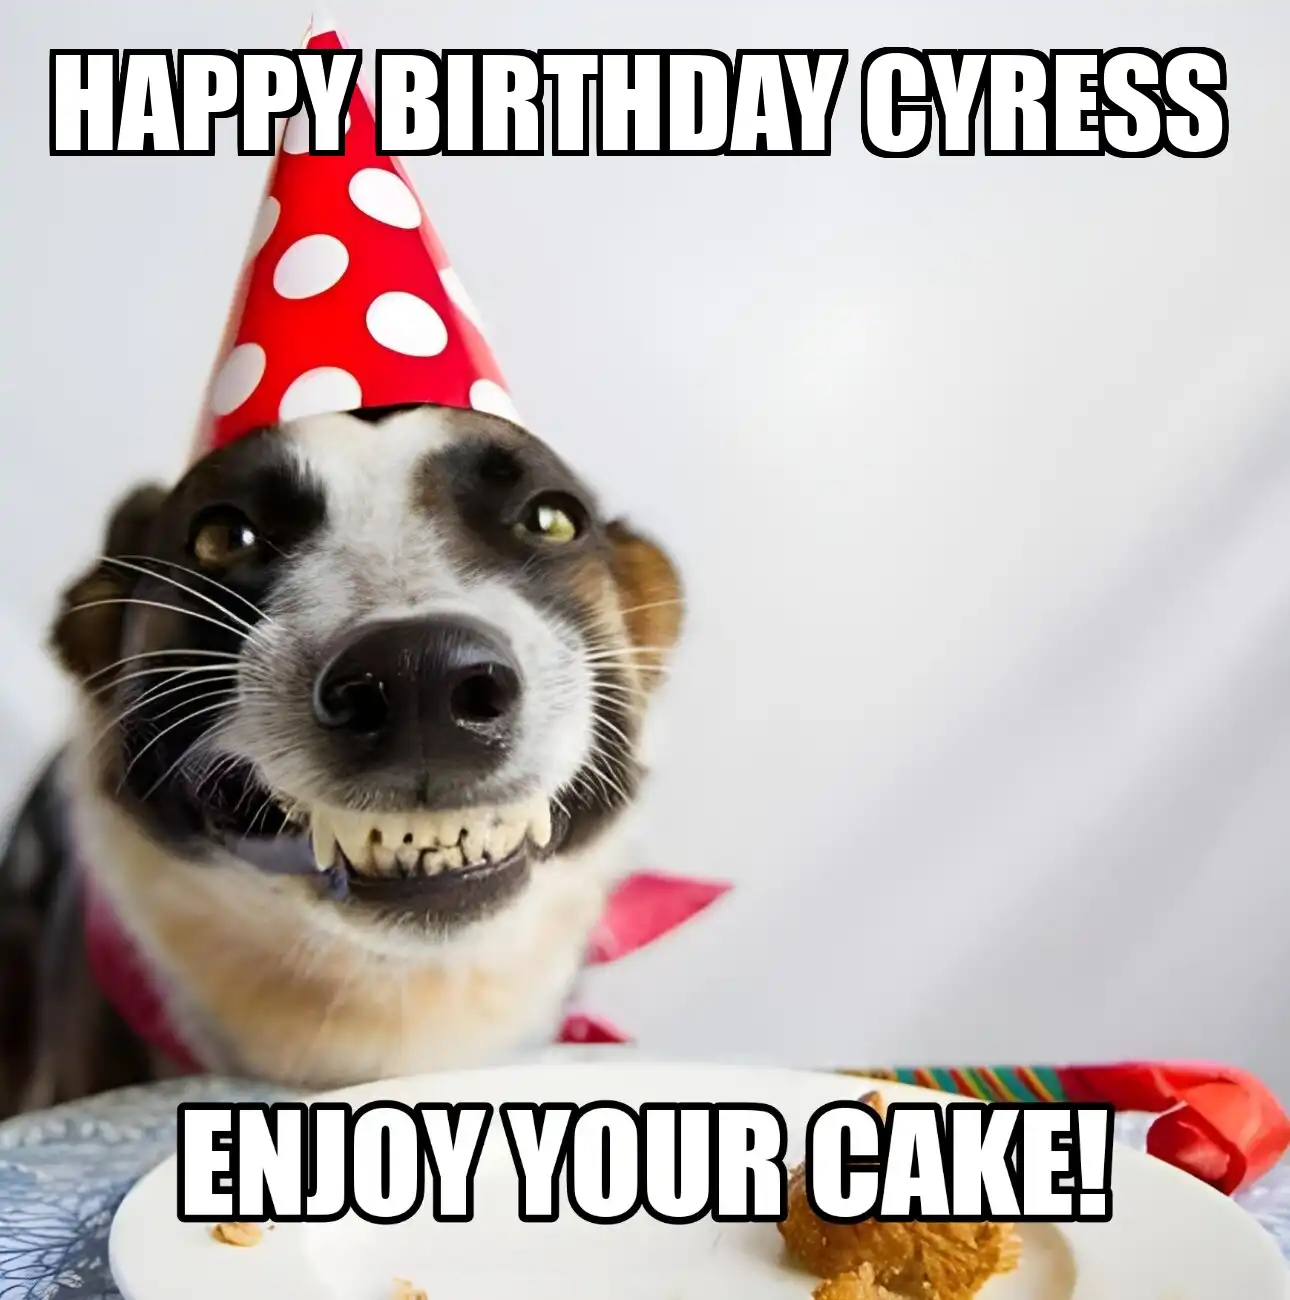 Happy Birthday Cyress Enjoy Your Cake Dog Meme